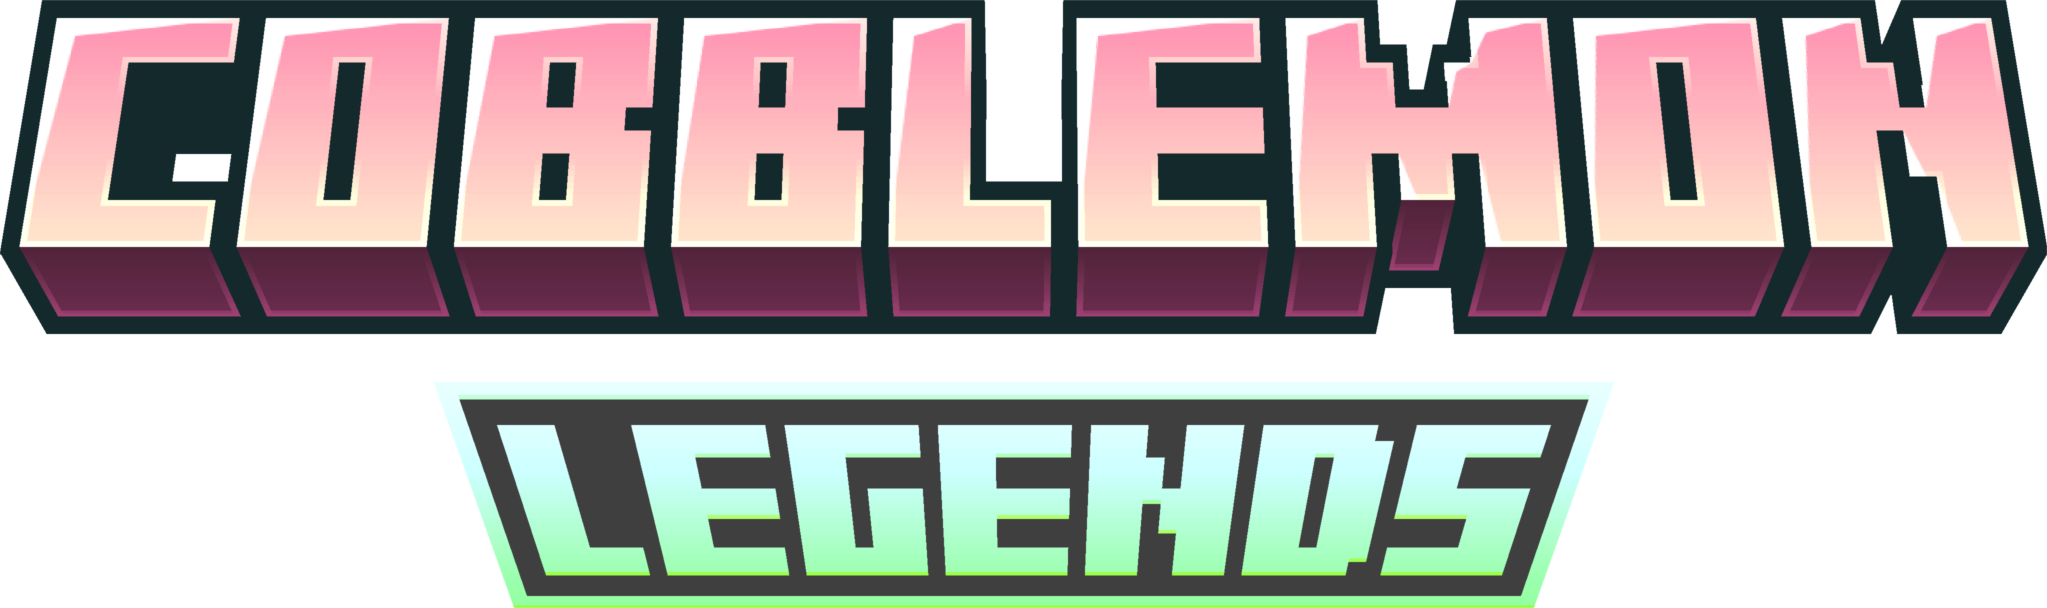 Cobblemon Legends: Cyberload Edition